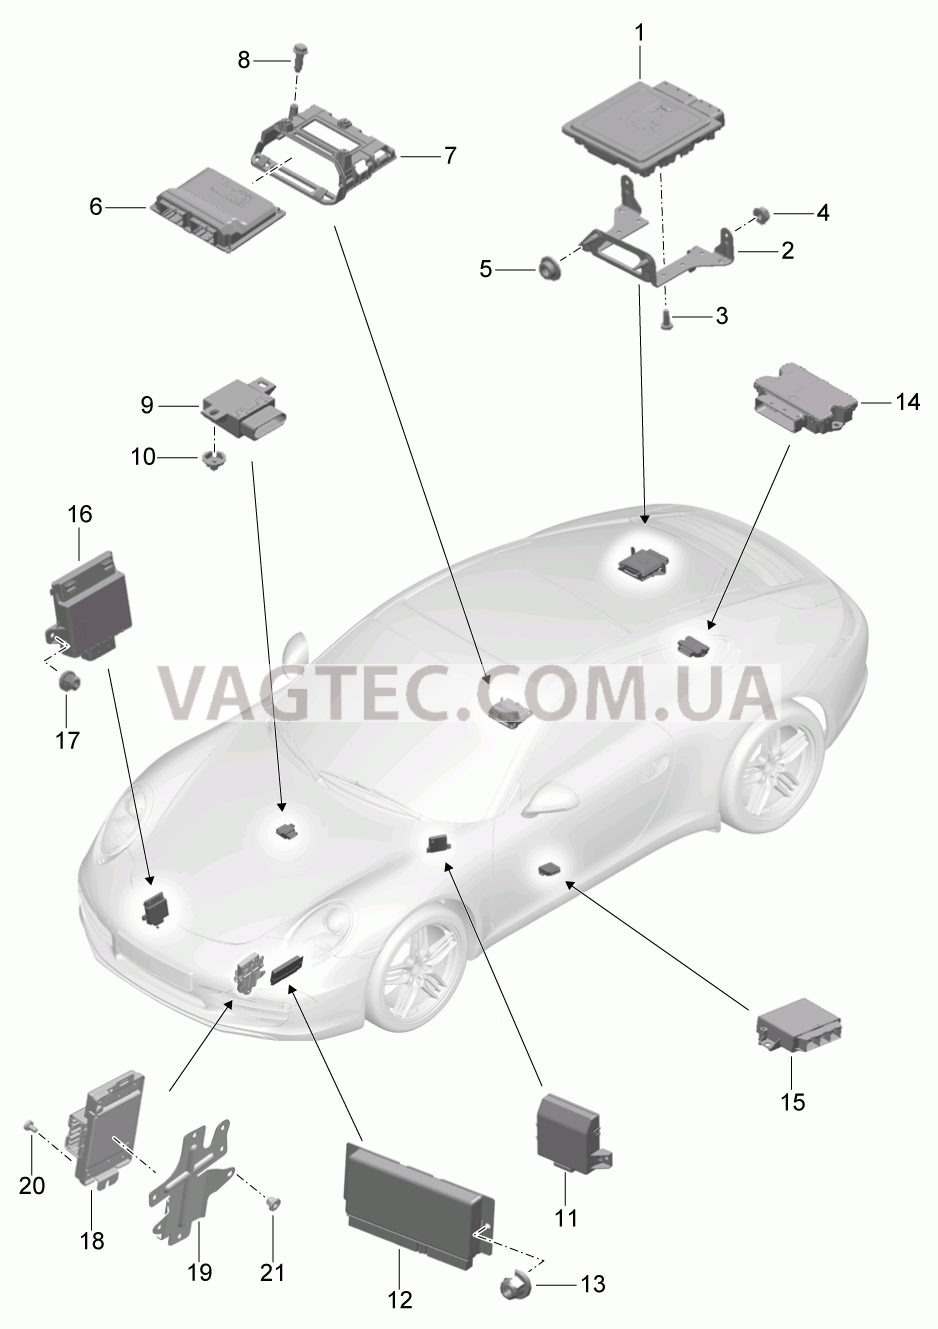 901-003 Блоки управления для PORSCHE 911.Carrera 2012-2016